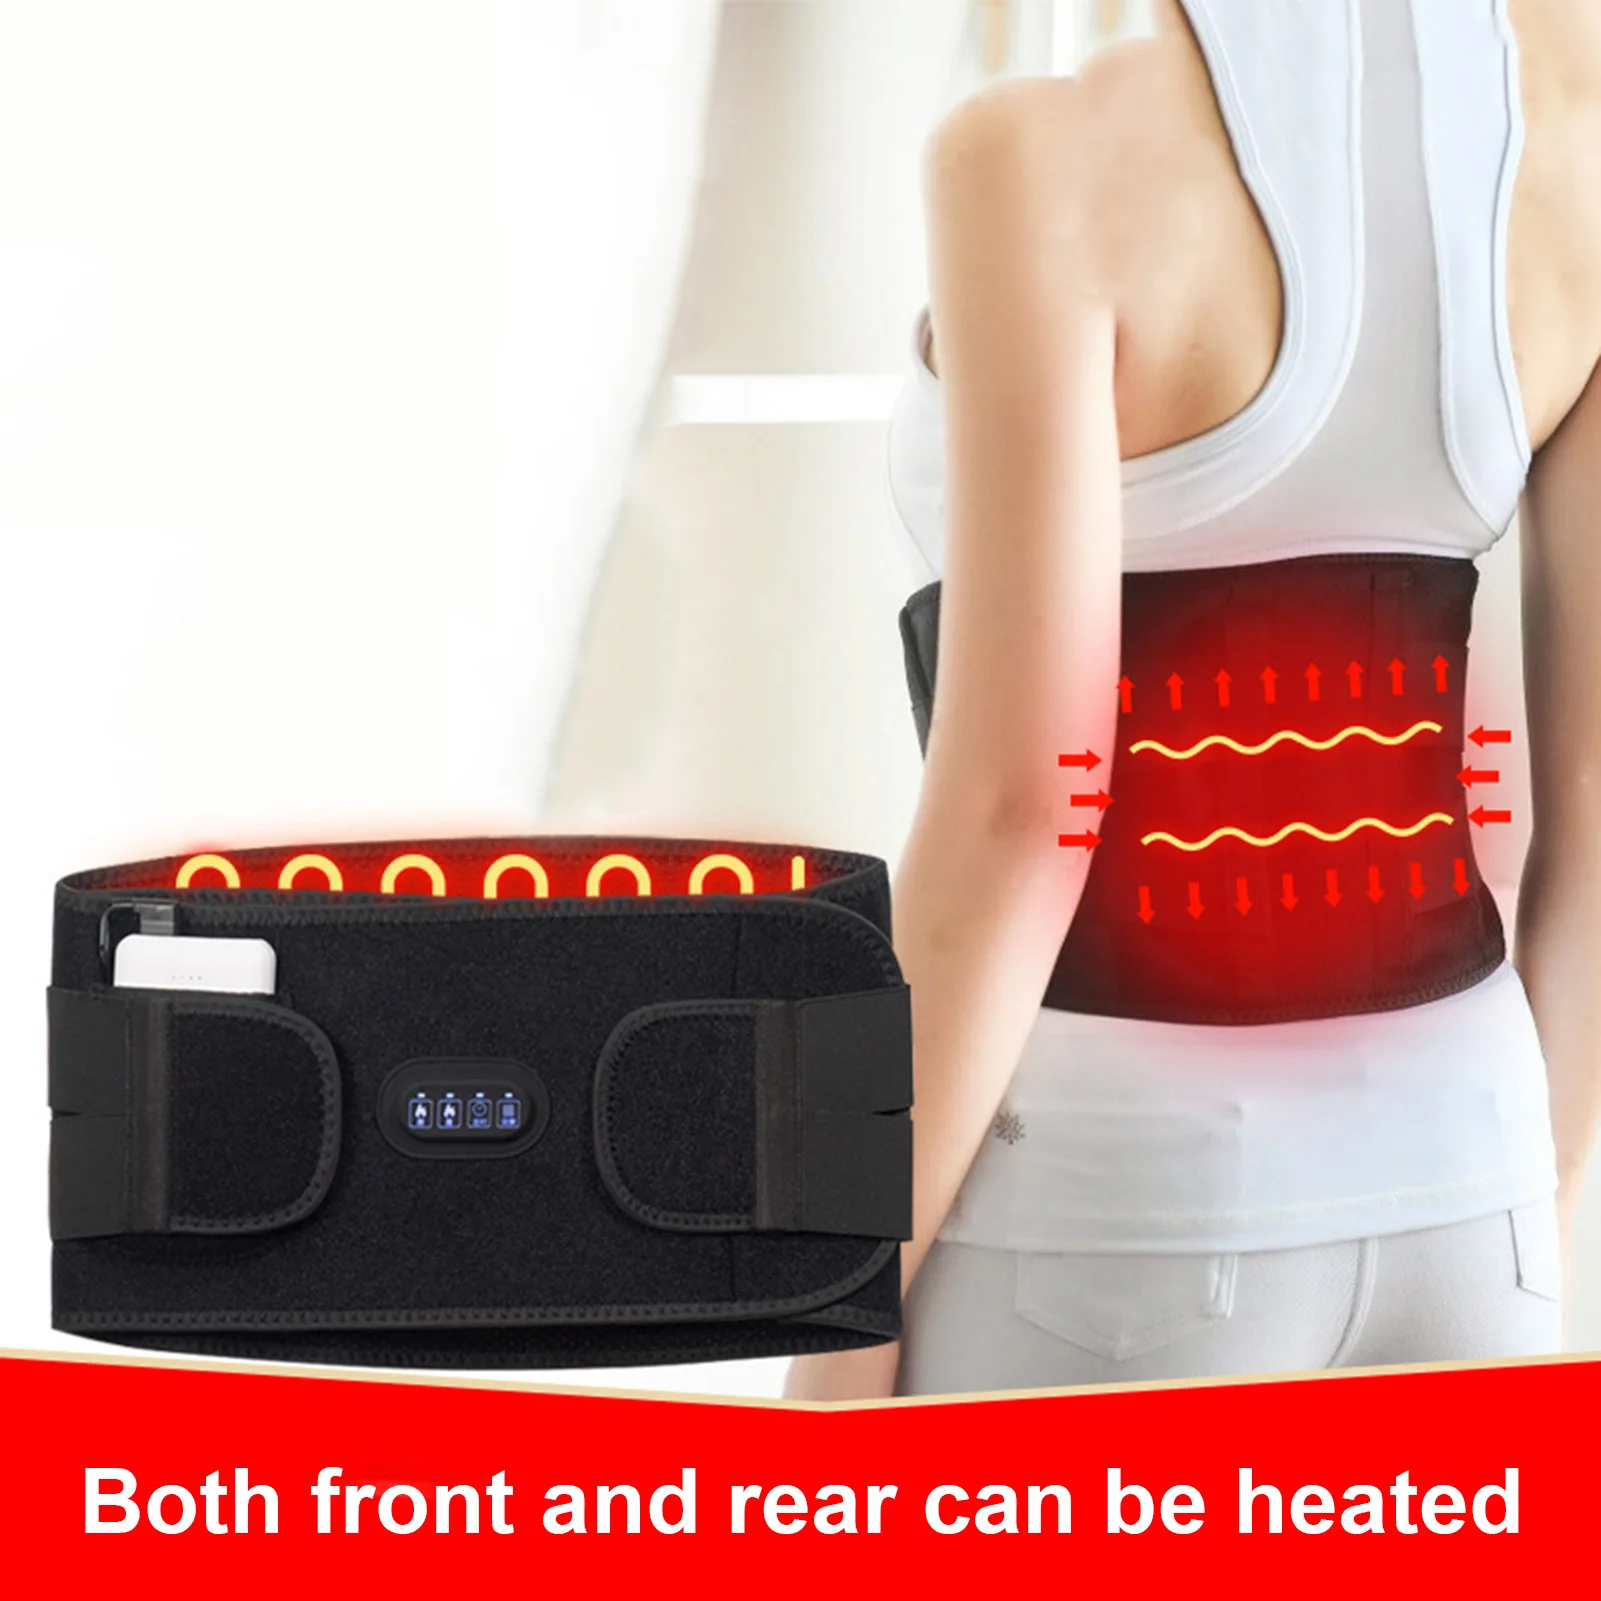 

Heating Massage Belt 3-Level Temperature Control High-Elastic Vibration Waist Support Belt Lumbar Brace Heating Belt Massager